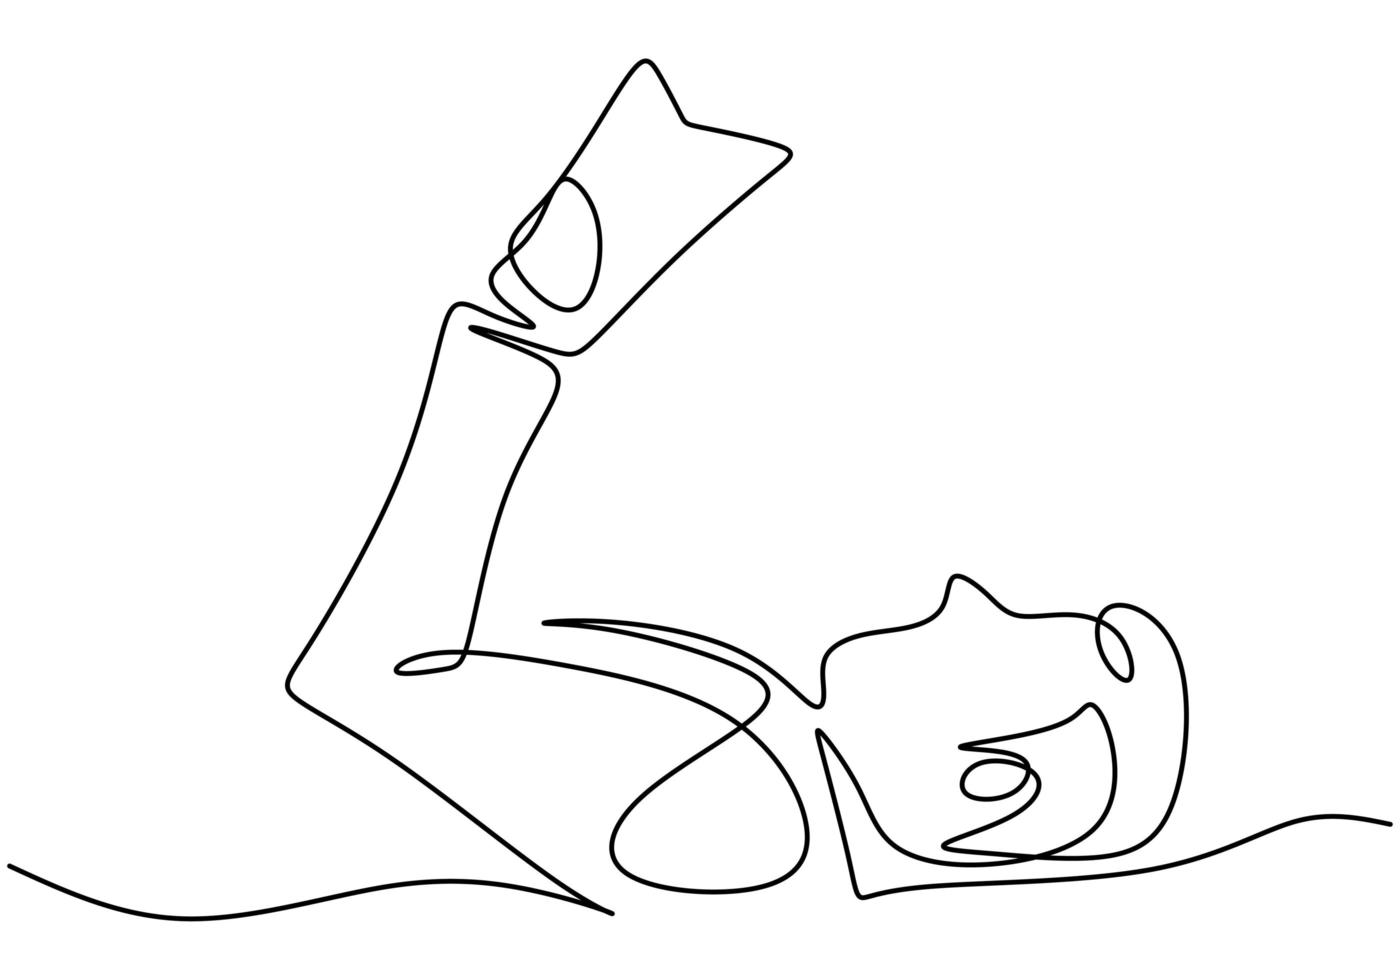 um desenho de linha contínua de um homem lendo um livro enquanto dormia. obtendo prazer com a leitura do livro. ilustração vetorial. vetor